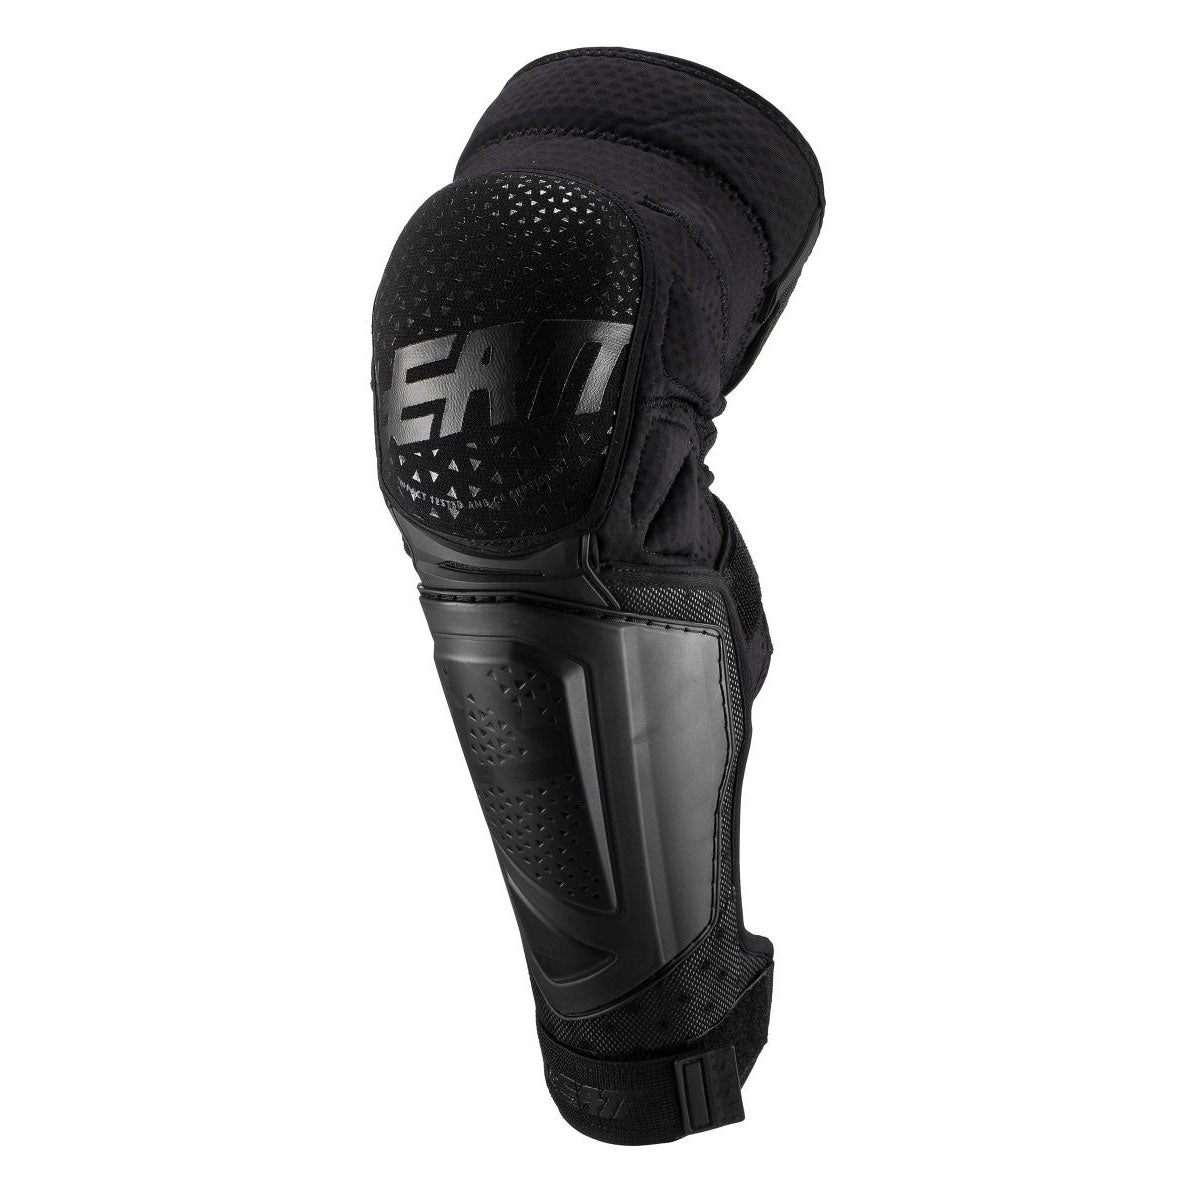 Leatt 3DF Hybrid EXT Knee/Shin Guard Large/X-Large Black